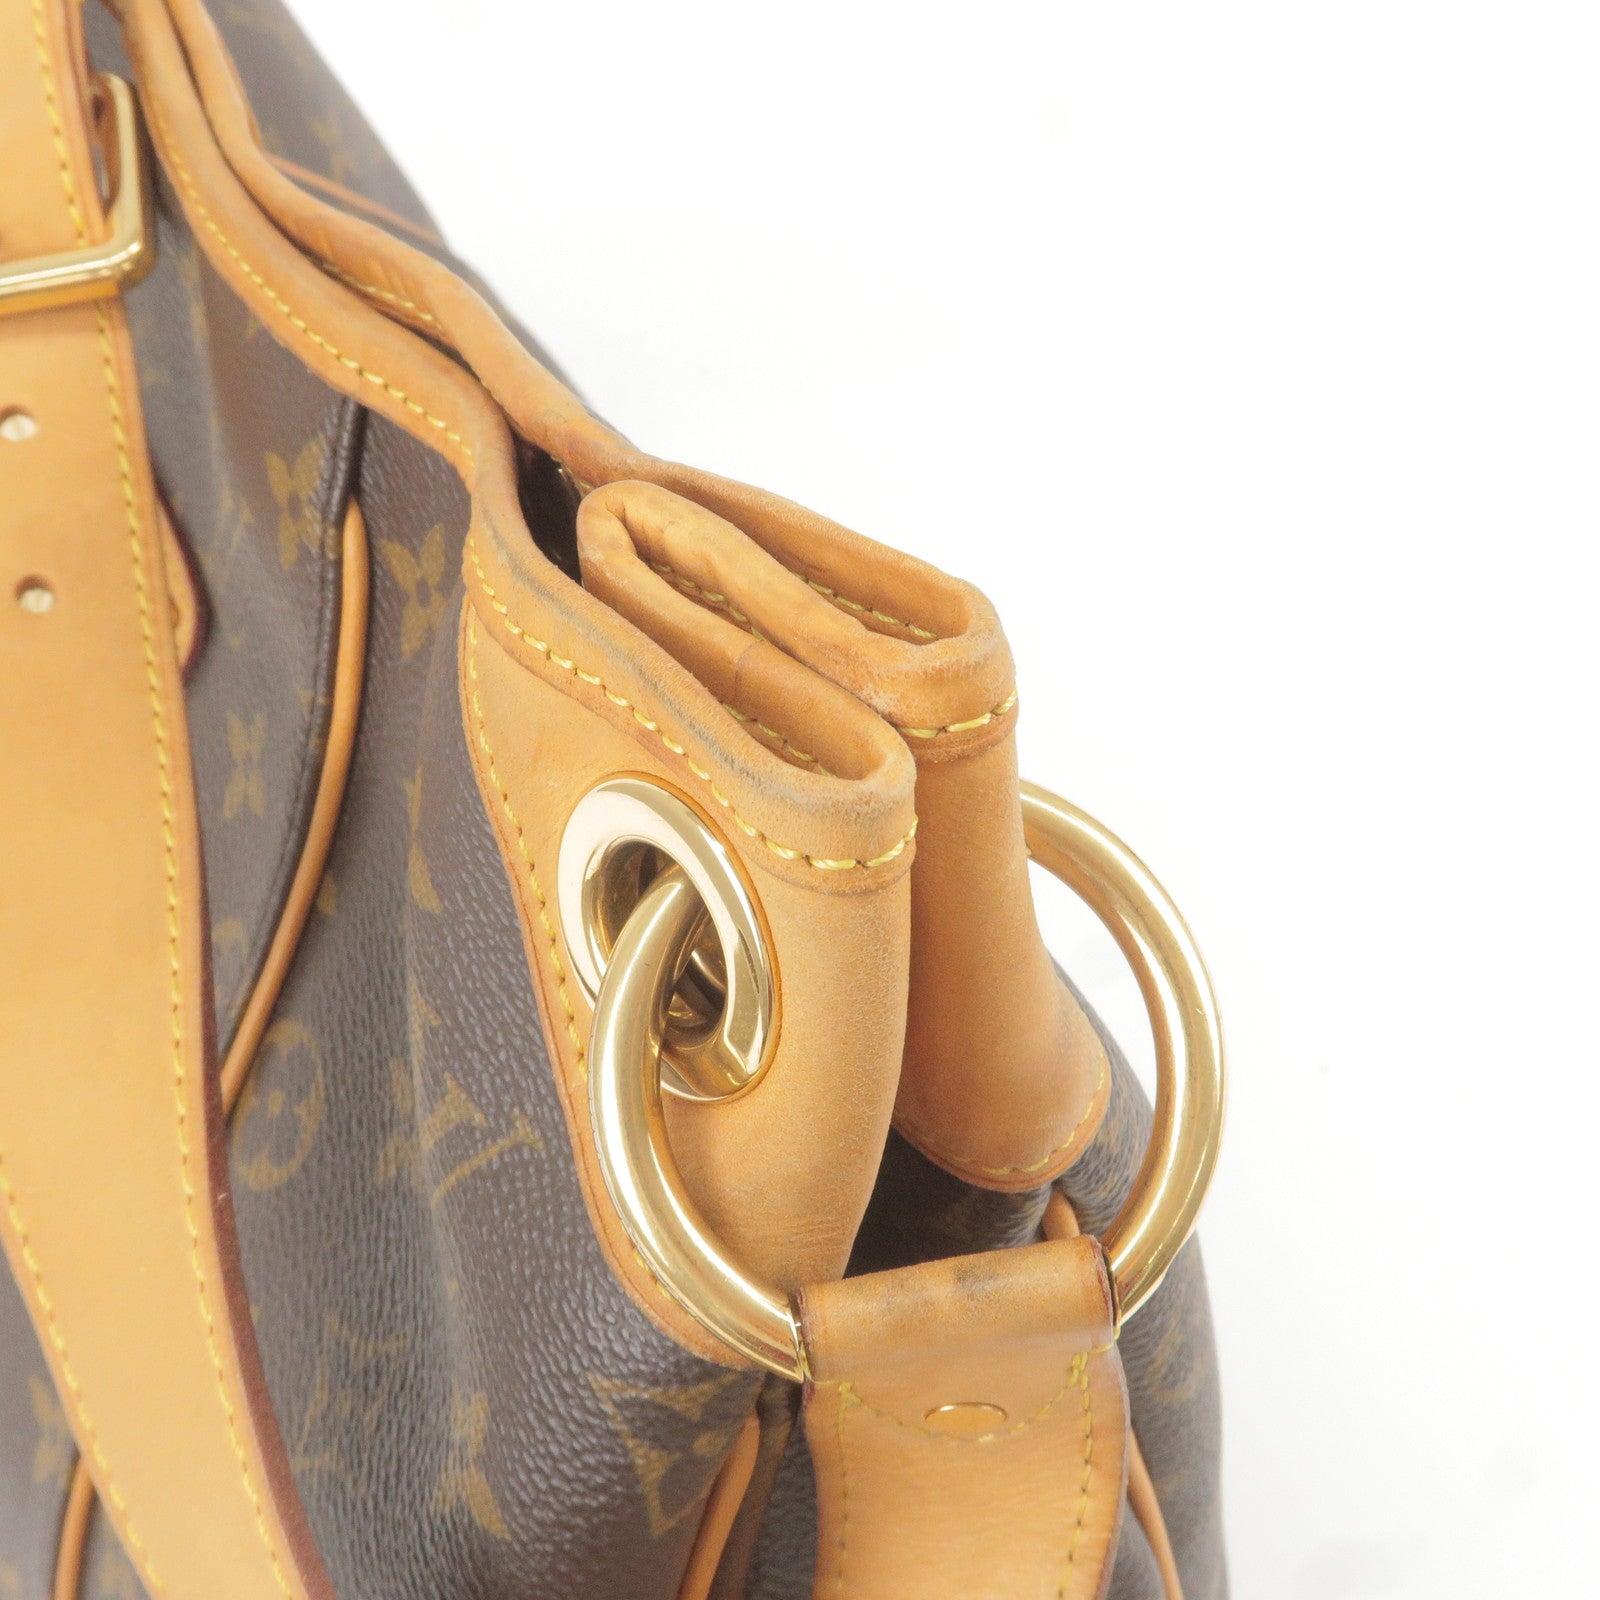 Authentic Louis Vuitton Galliera PM Monogram M56382 Guarantee Shoulder Bag  LD756